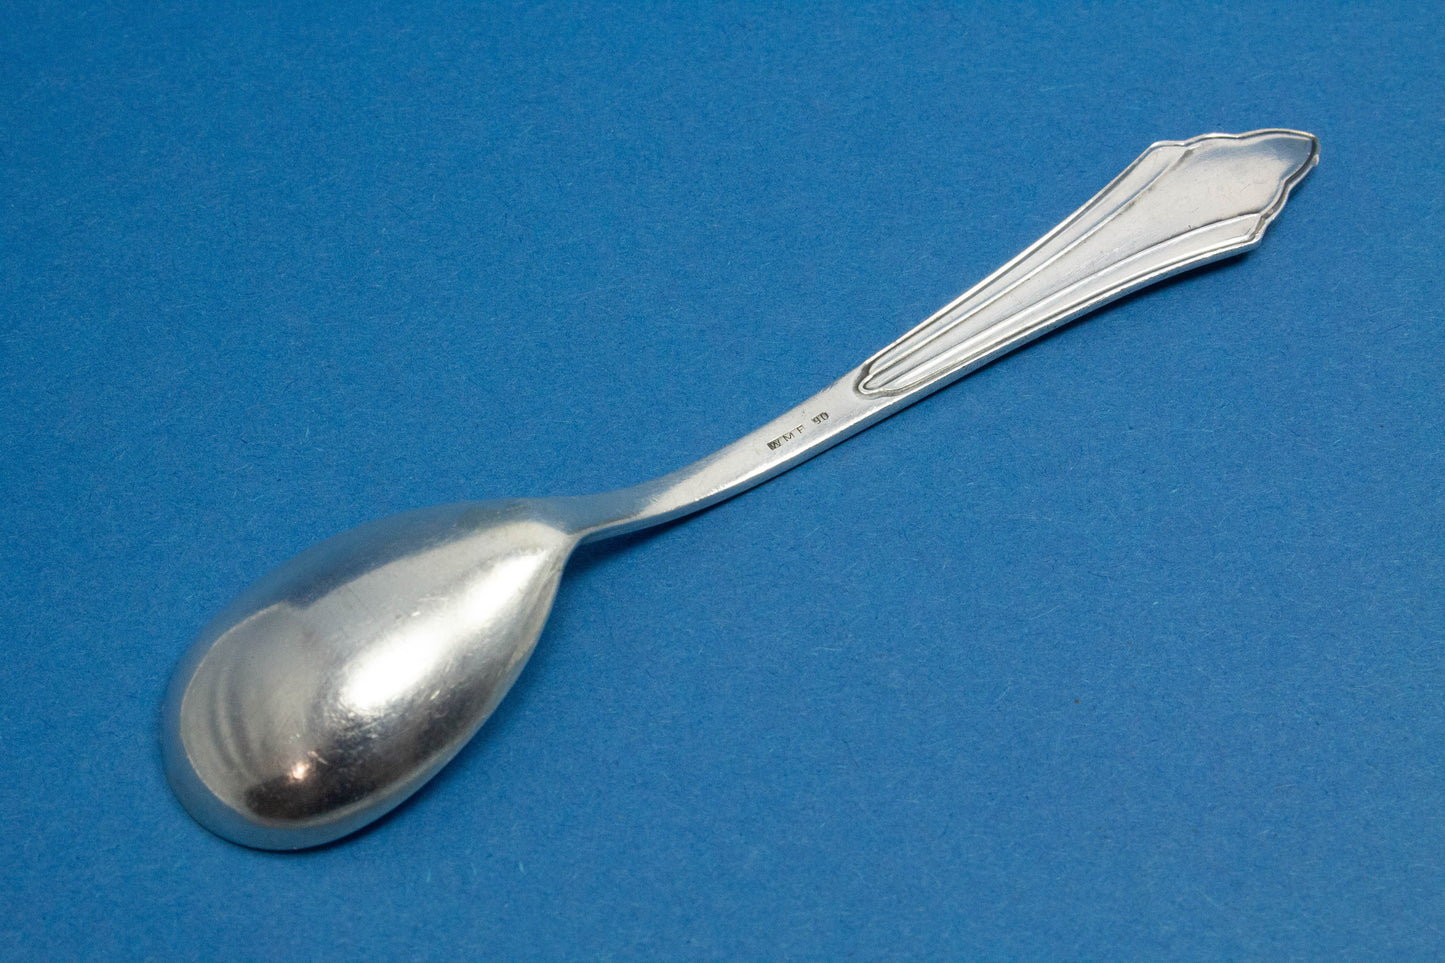 Jam spoon by WMF, WMF 900 fanned pattern